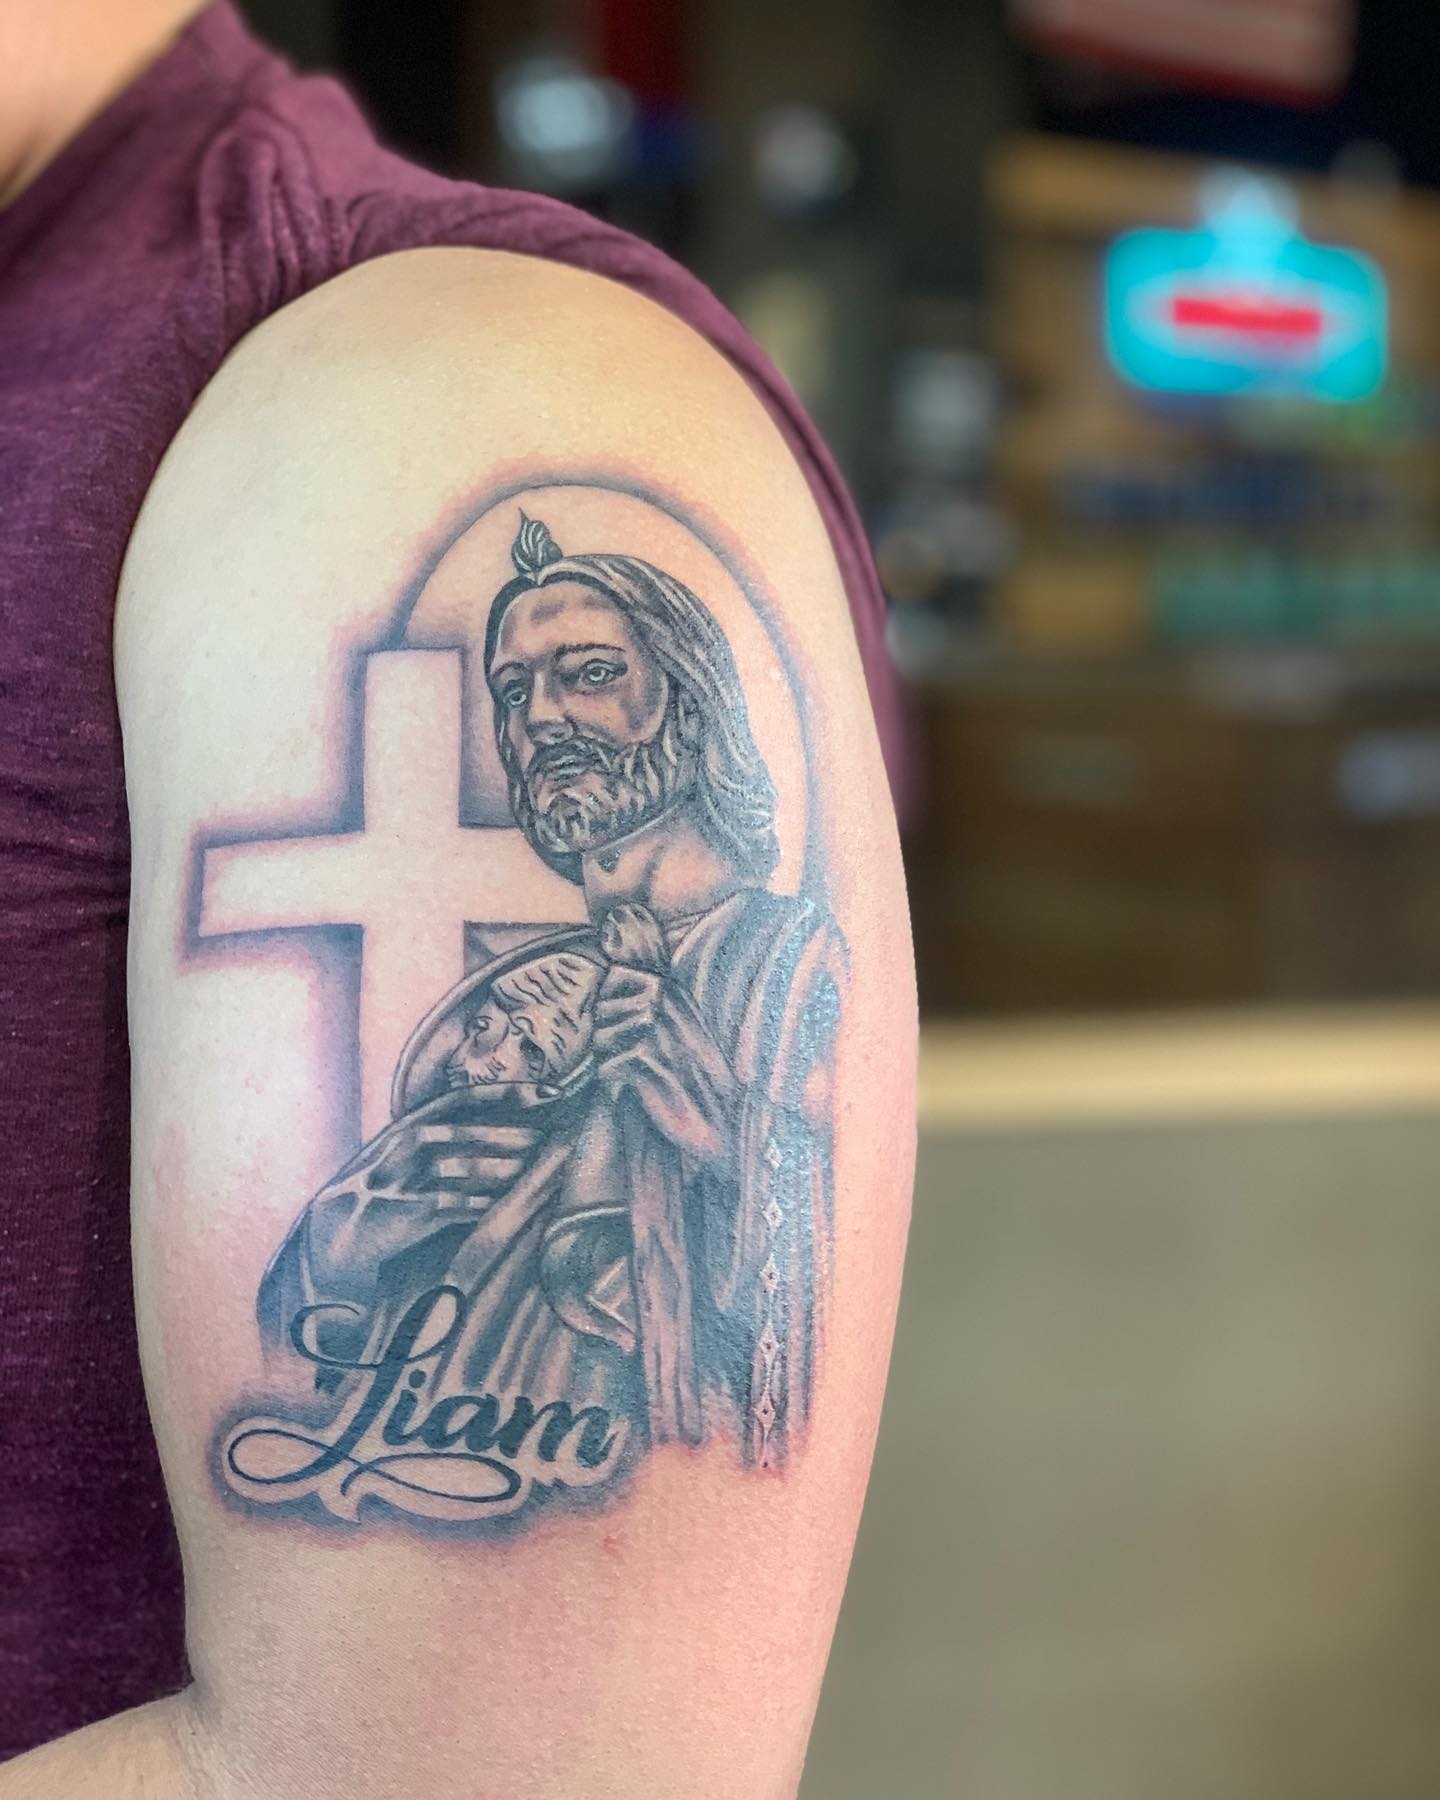 San Judas y tatuaje de cruz.